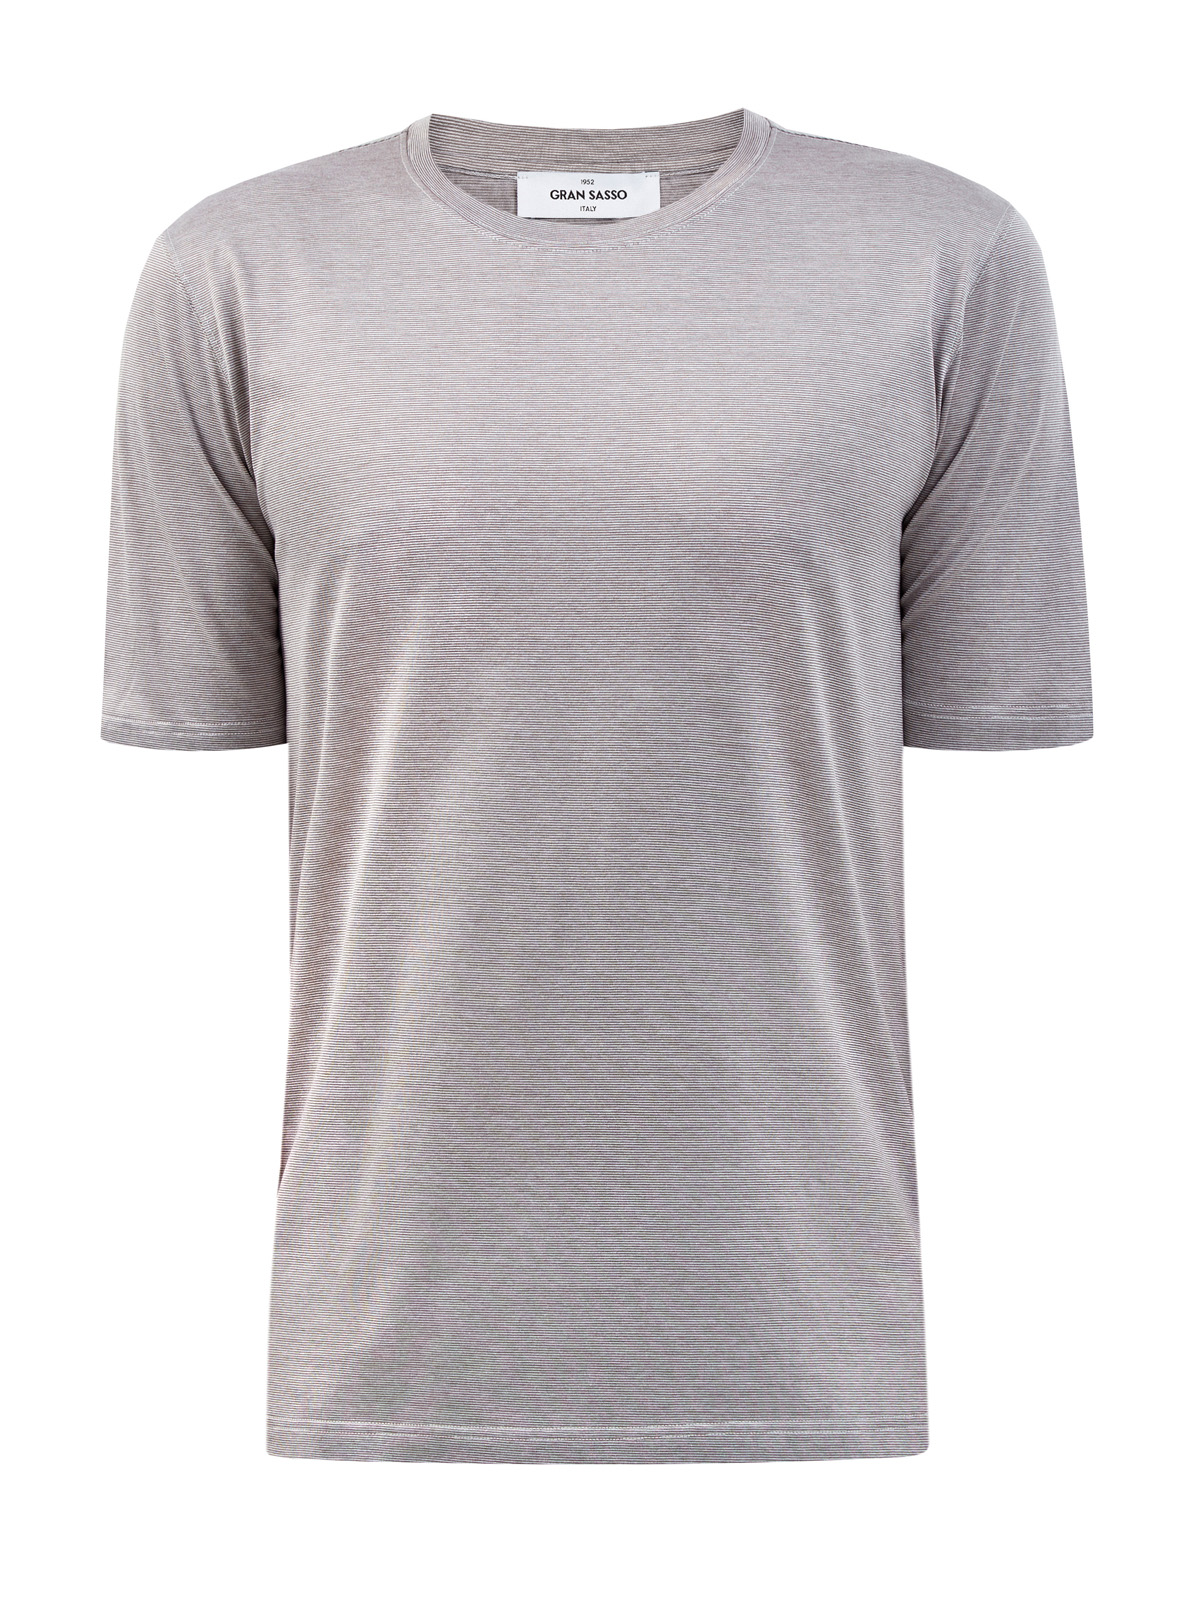 Хлопковая футболка с микро-принтом в тонкую полоску GRAN SASSO, цвет серый, размер 48;52;54;56;50 - фото 1